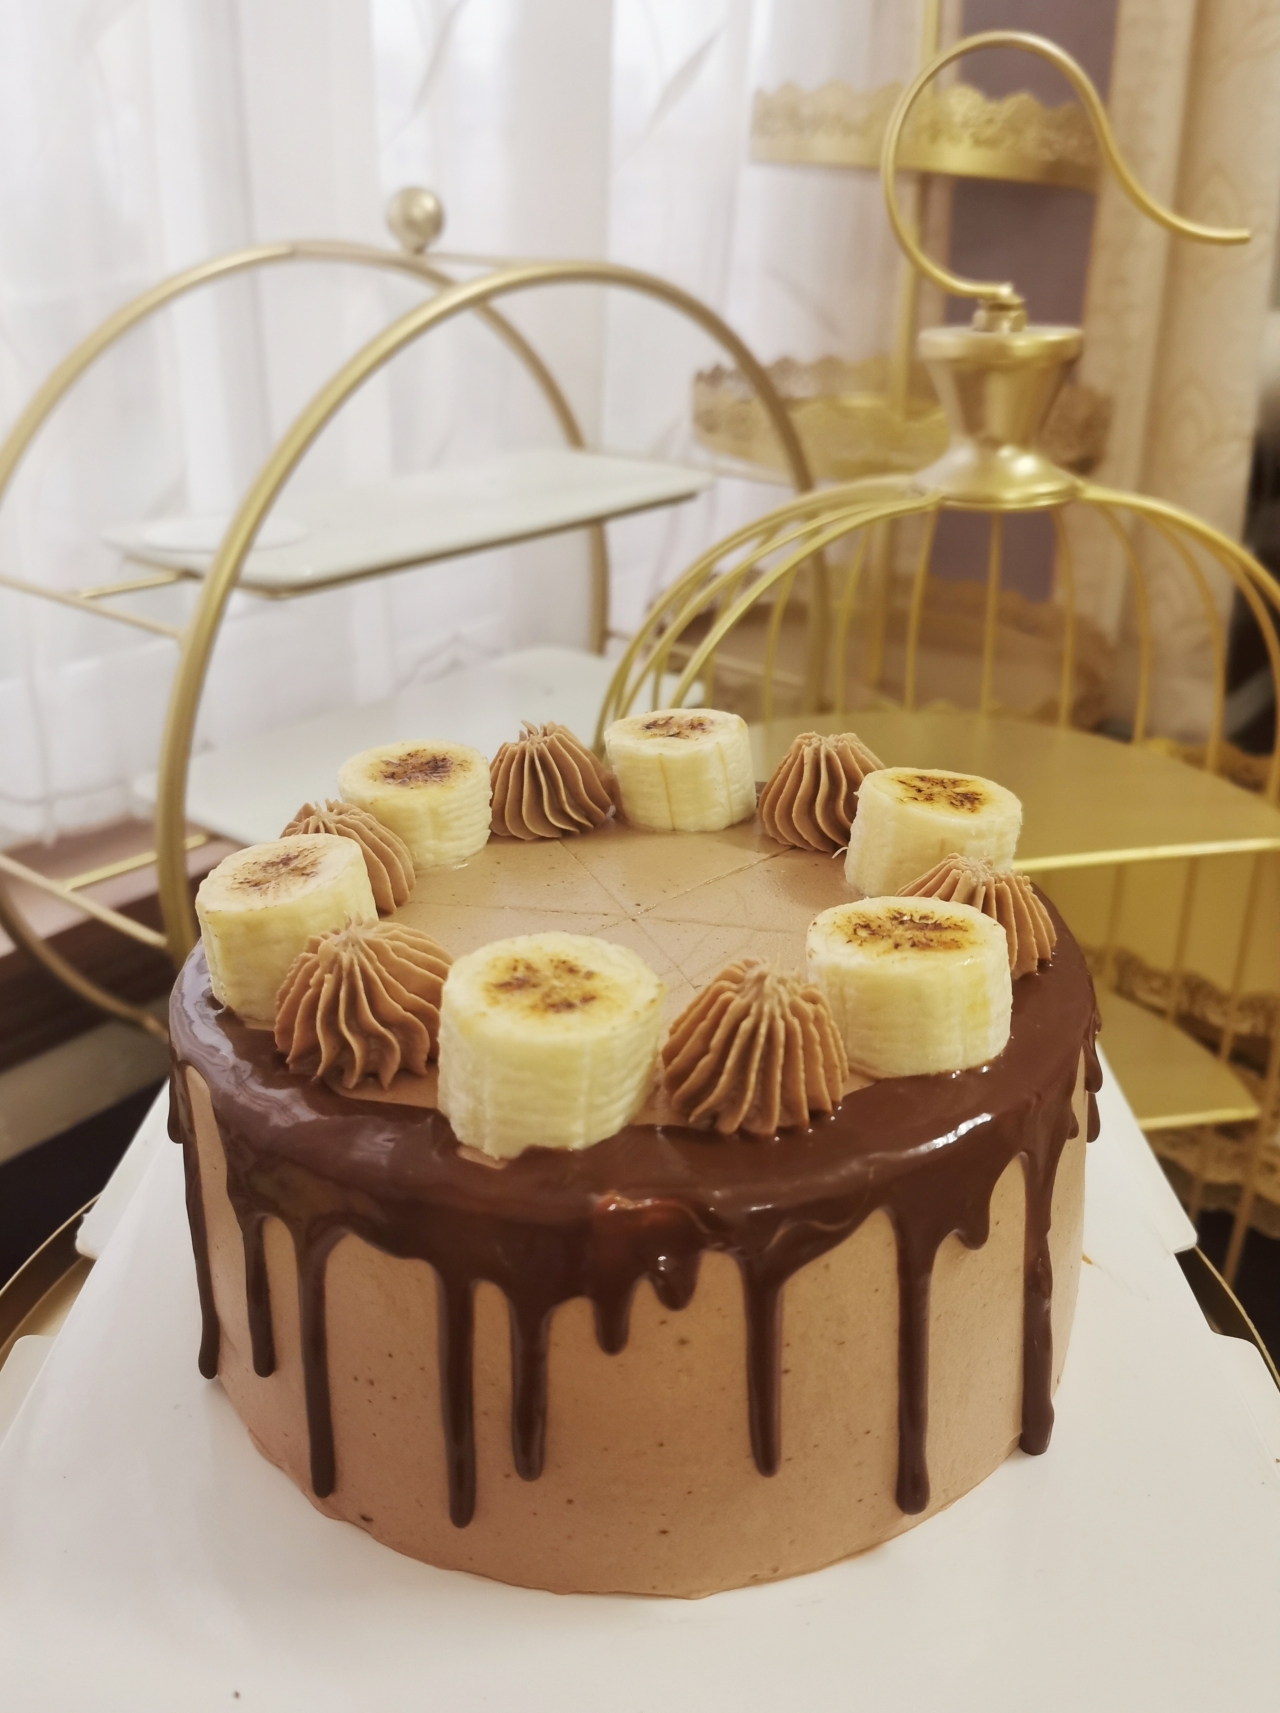 美拉德蛋糕|焦糖风巧克力香蕉蛋糕